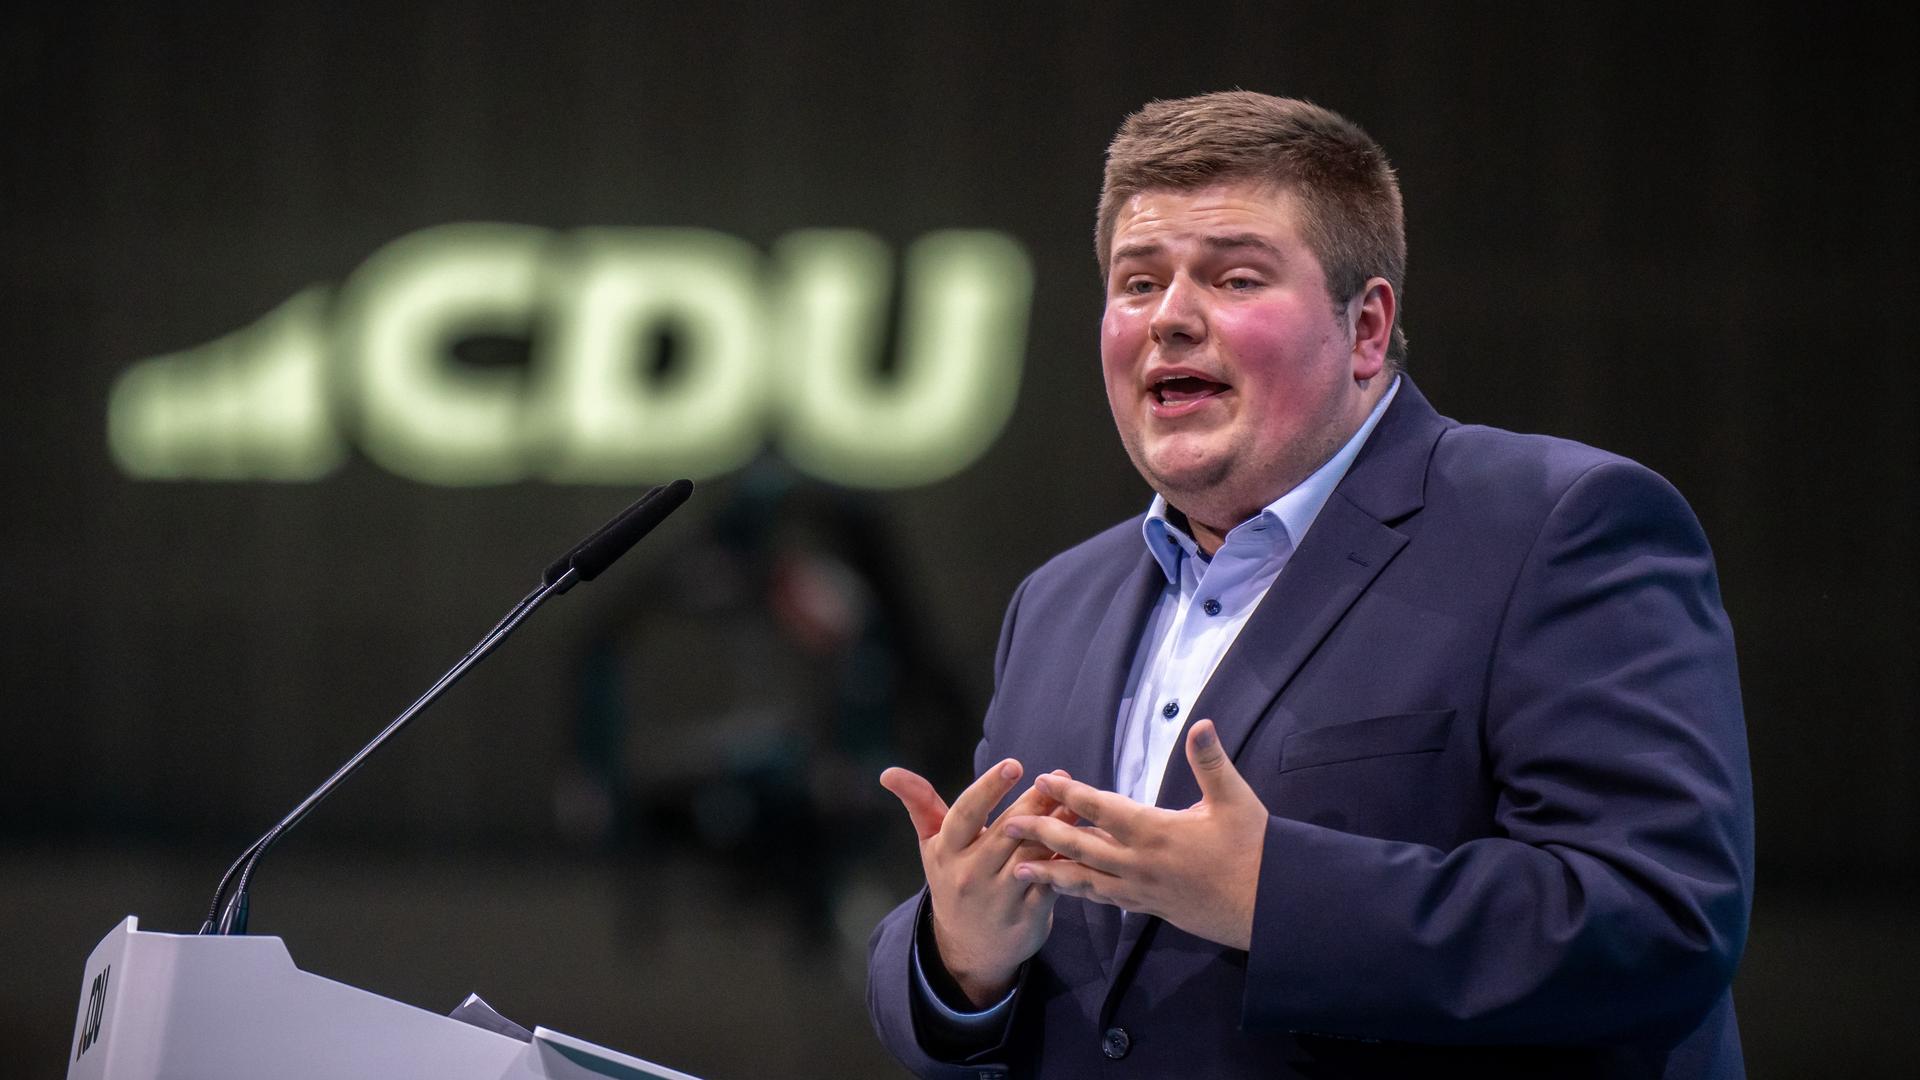 Johannes Volkmann, 27 Jahre alter Enkel von Altkanzler Kohl, spricht beim CDU-Bundesparteitag. Im Hintergrund ist das Logo der Partei leicht verschwommen zu sehen.